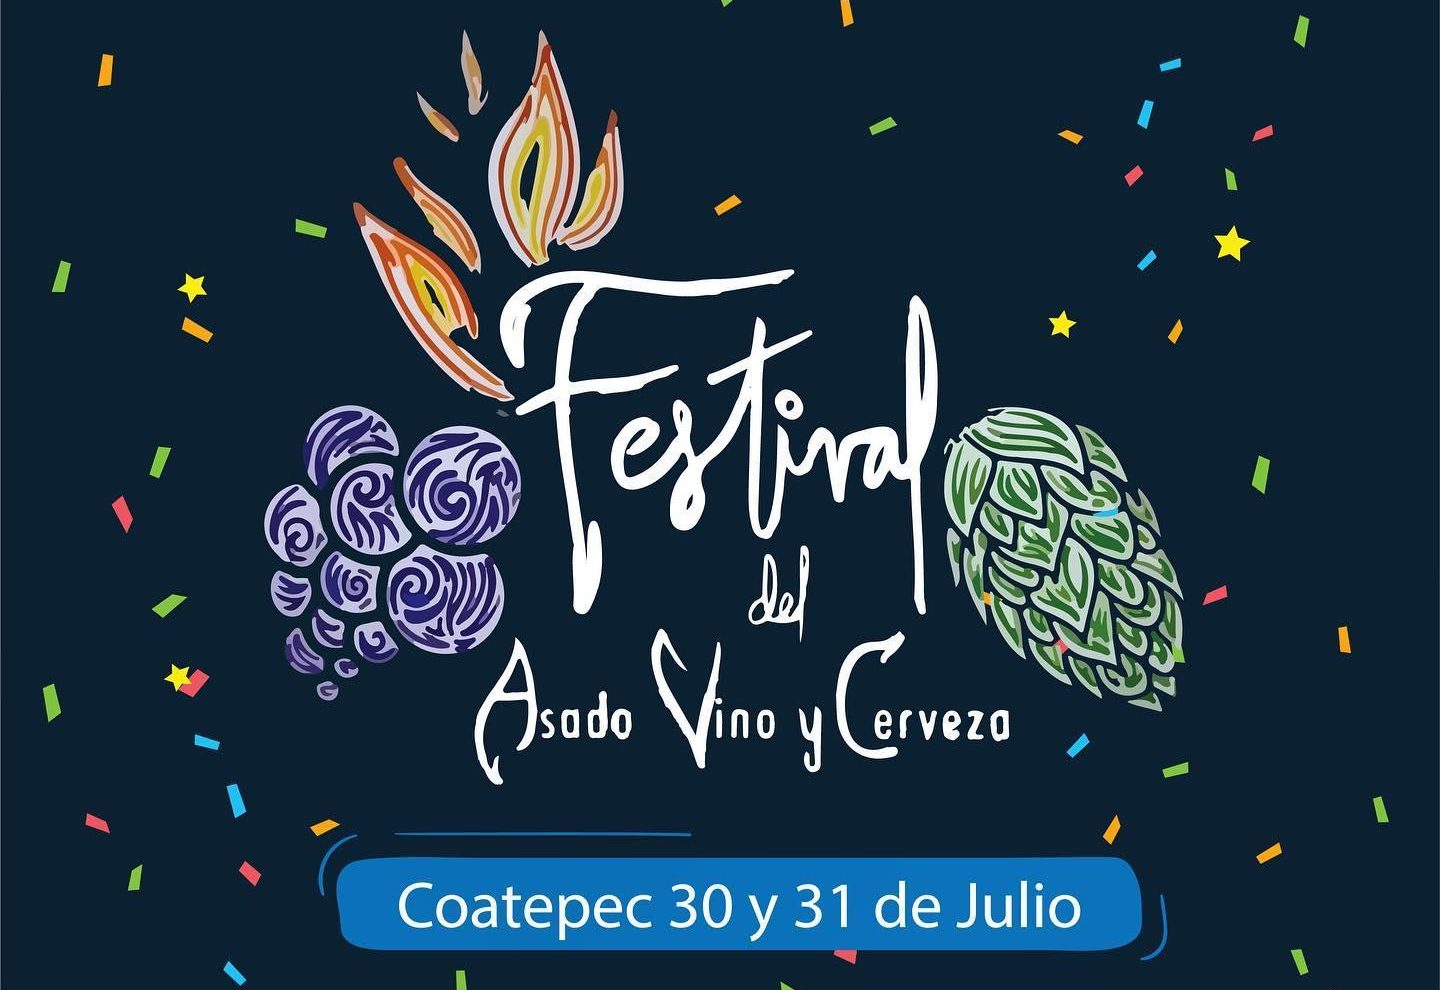 Difundirá Festival del Asado, Vino y Cerveza, la gastronomía, artesanías y cultura de Coatepec